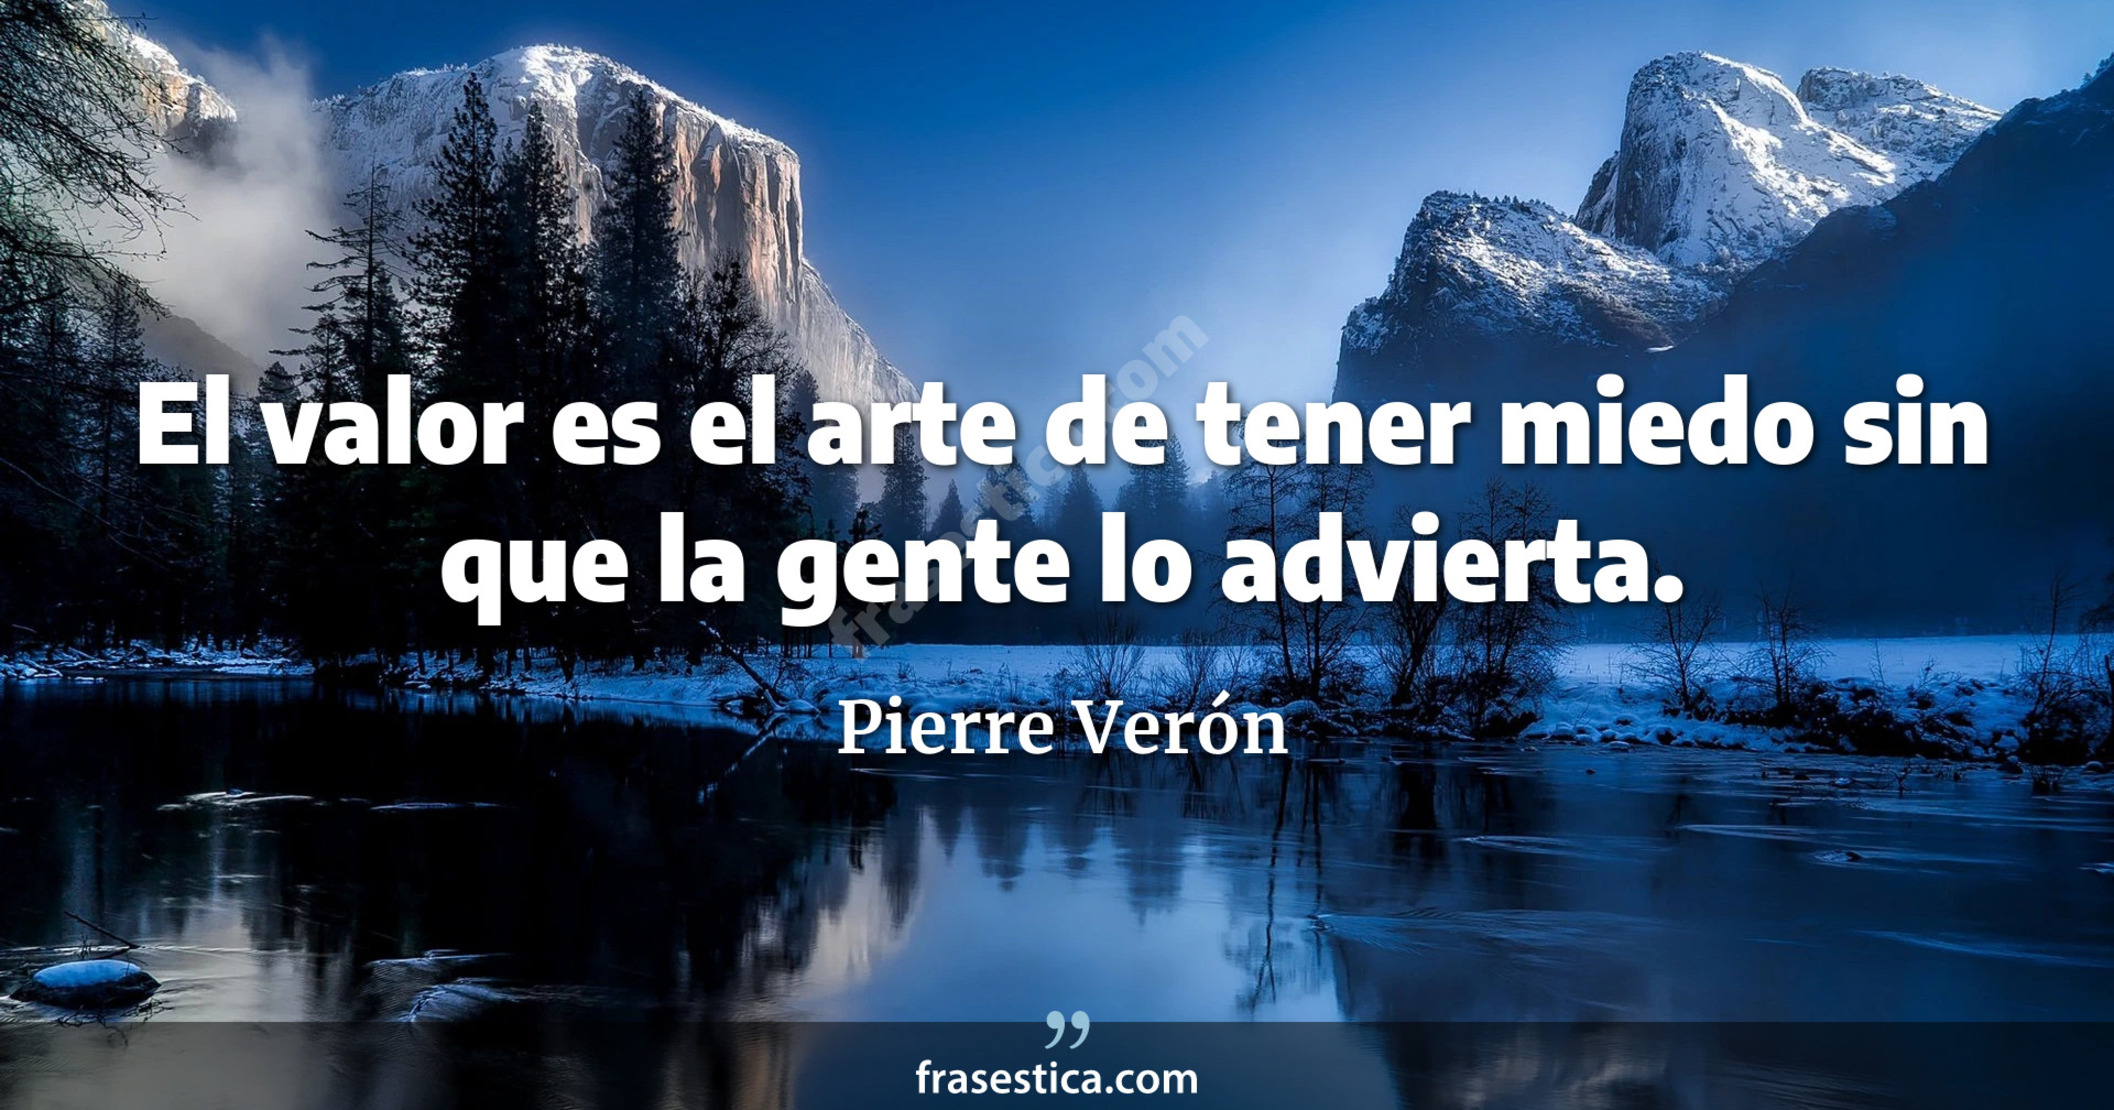 El valor es el arte de tener miedo sin que la gente lo advierta. - Pierre Verón